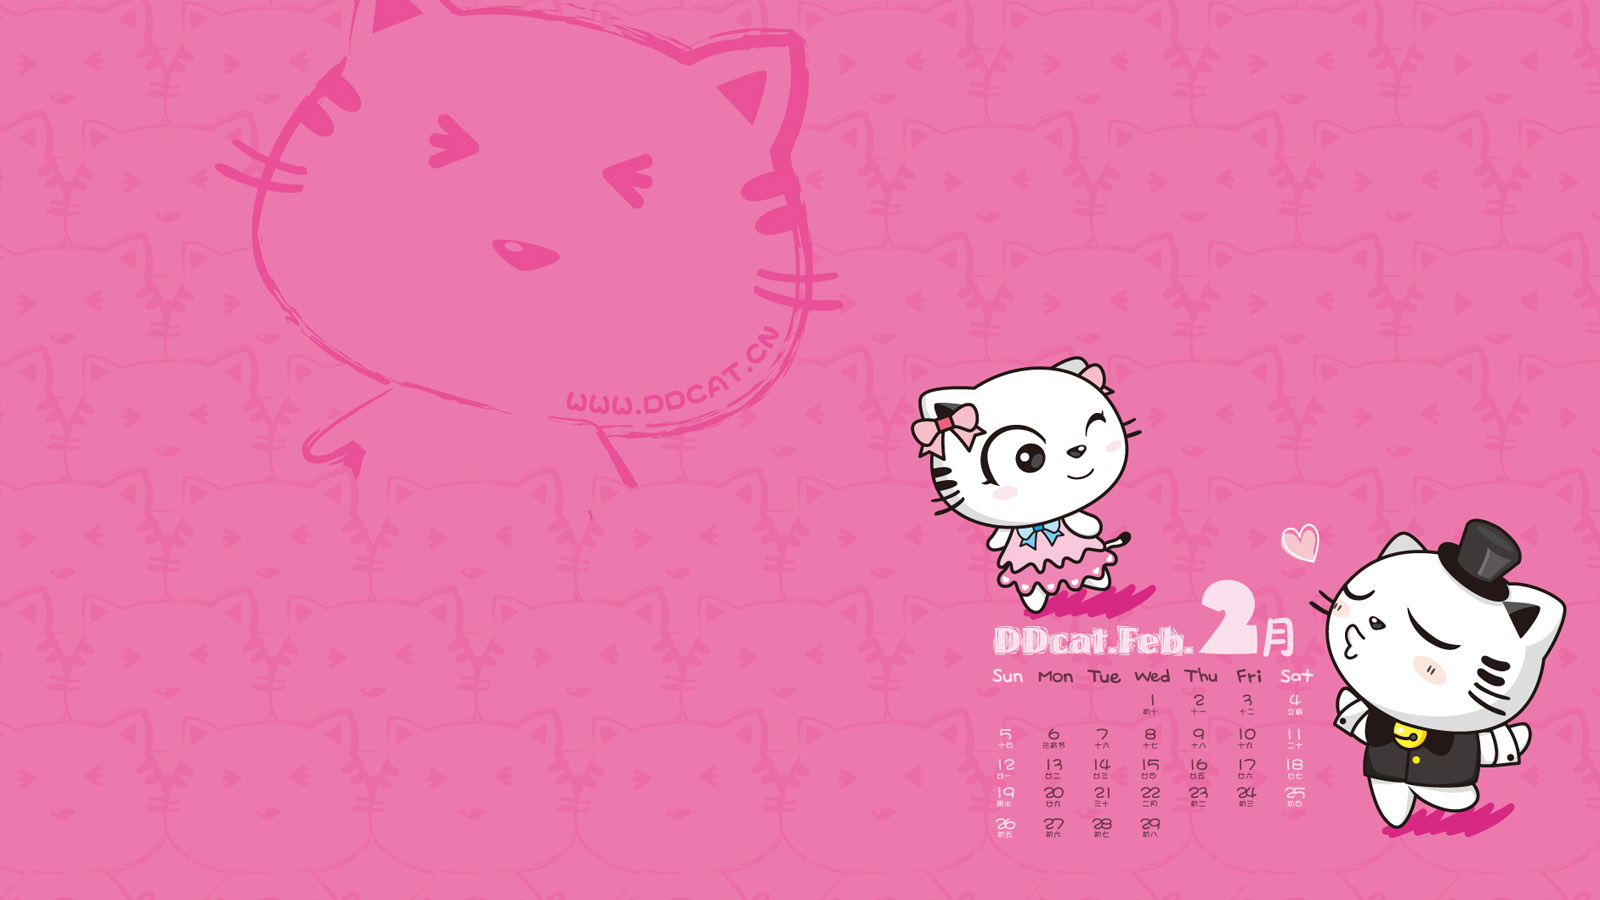 Ding Dong cat February 2012 calendar wallpaper